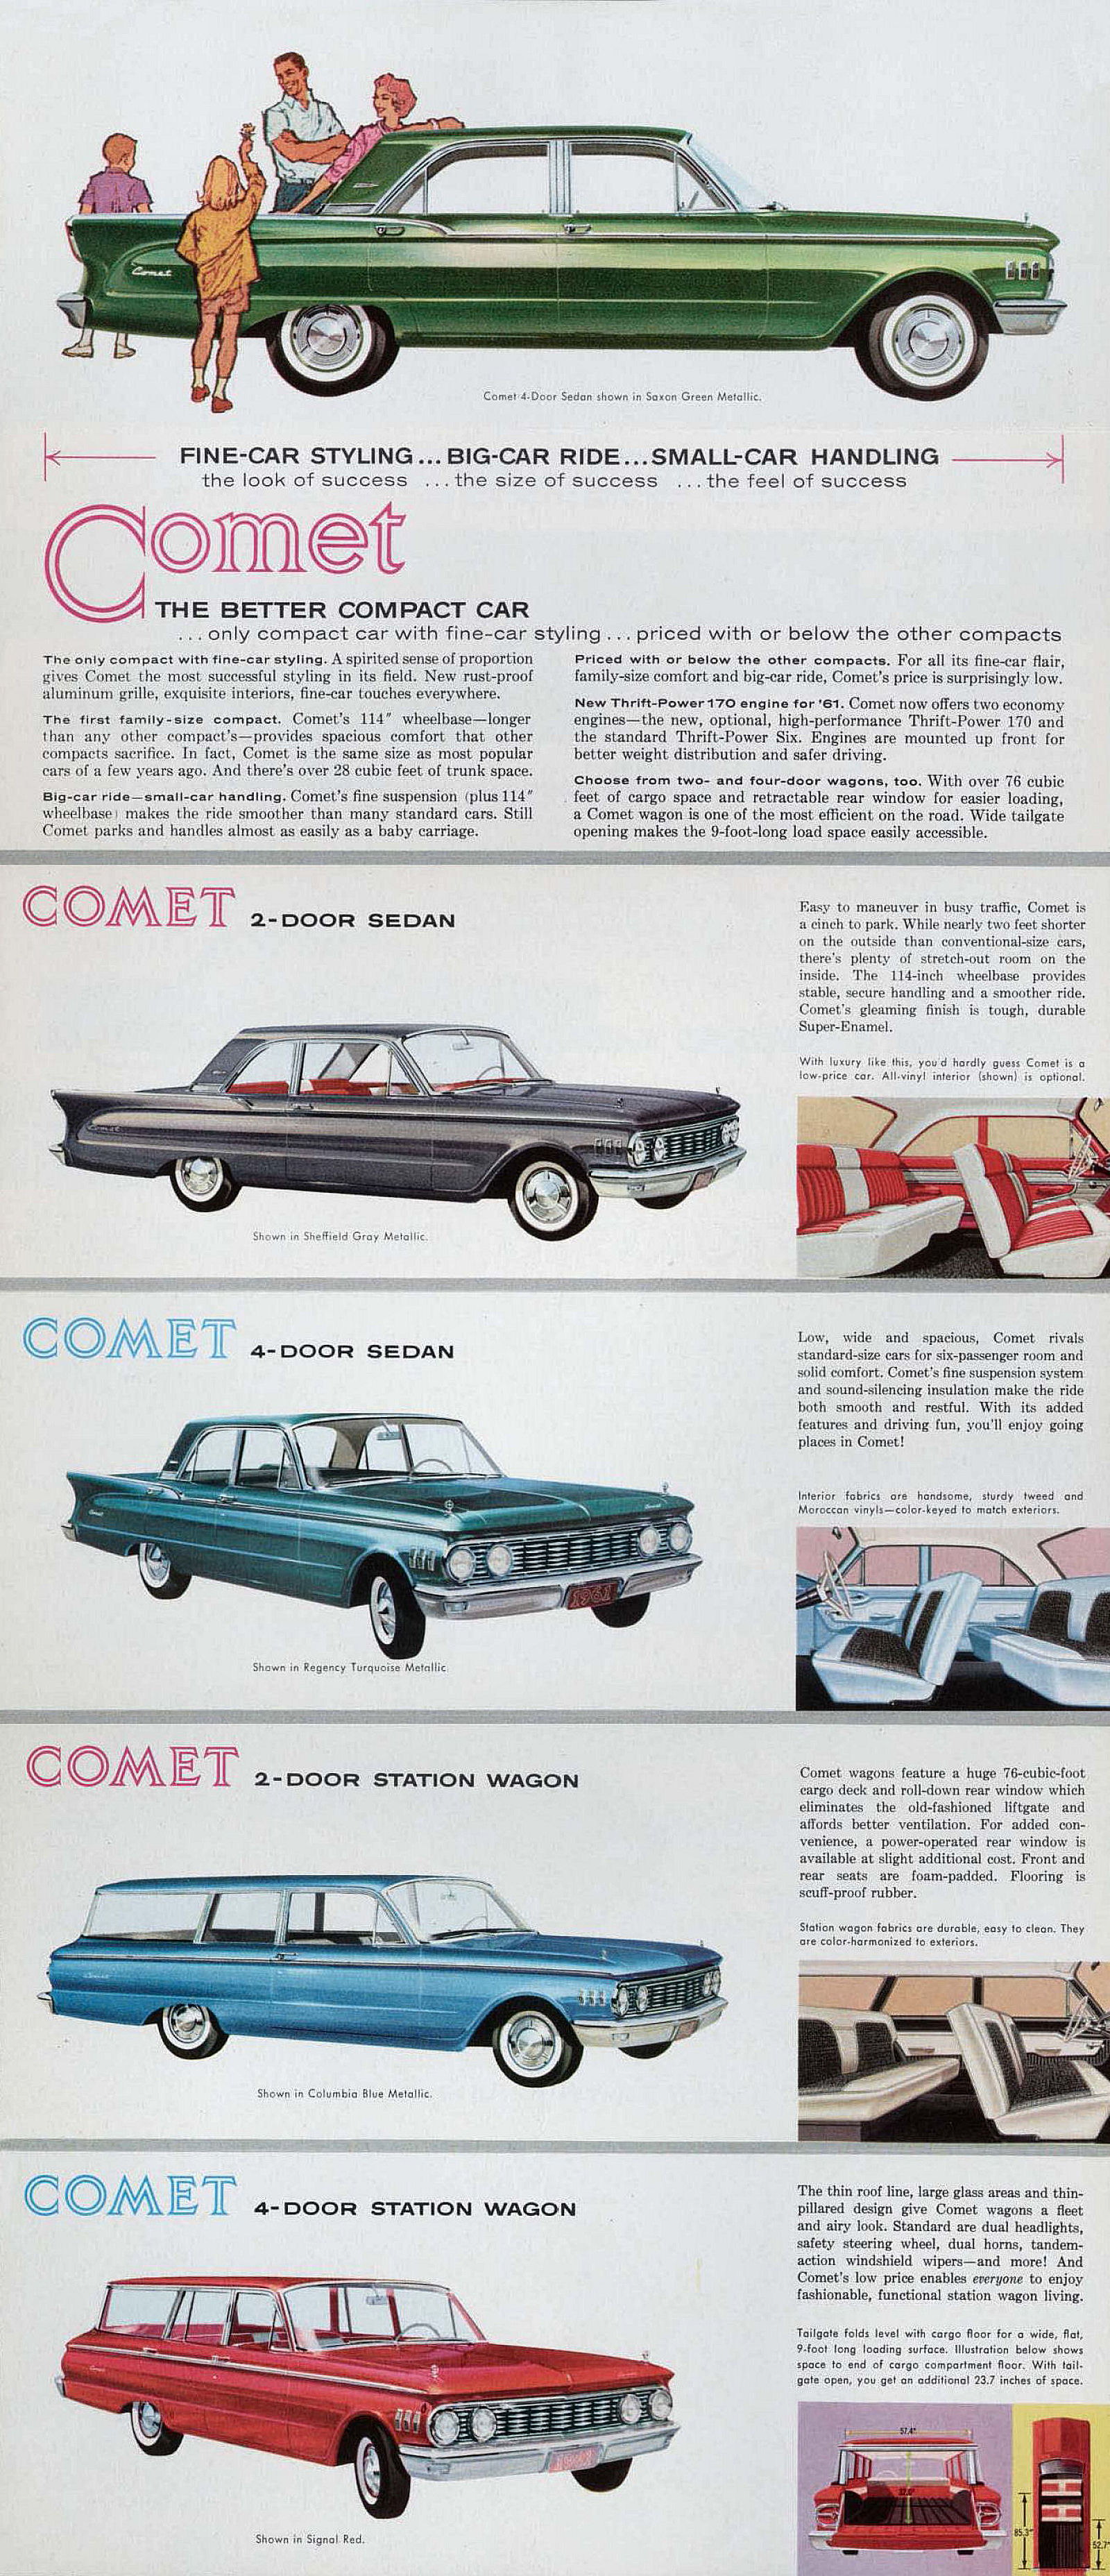 1961 Mercury Comet Foldout-Side B